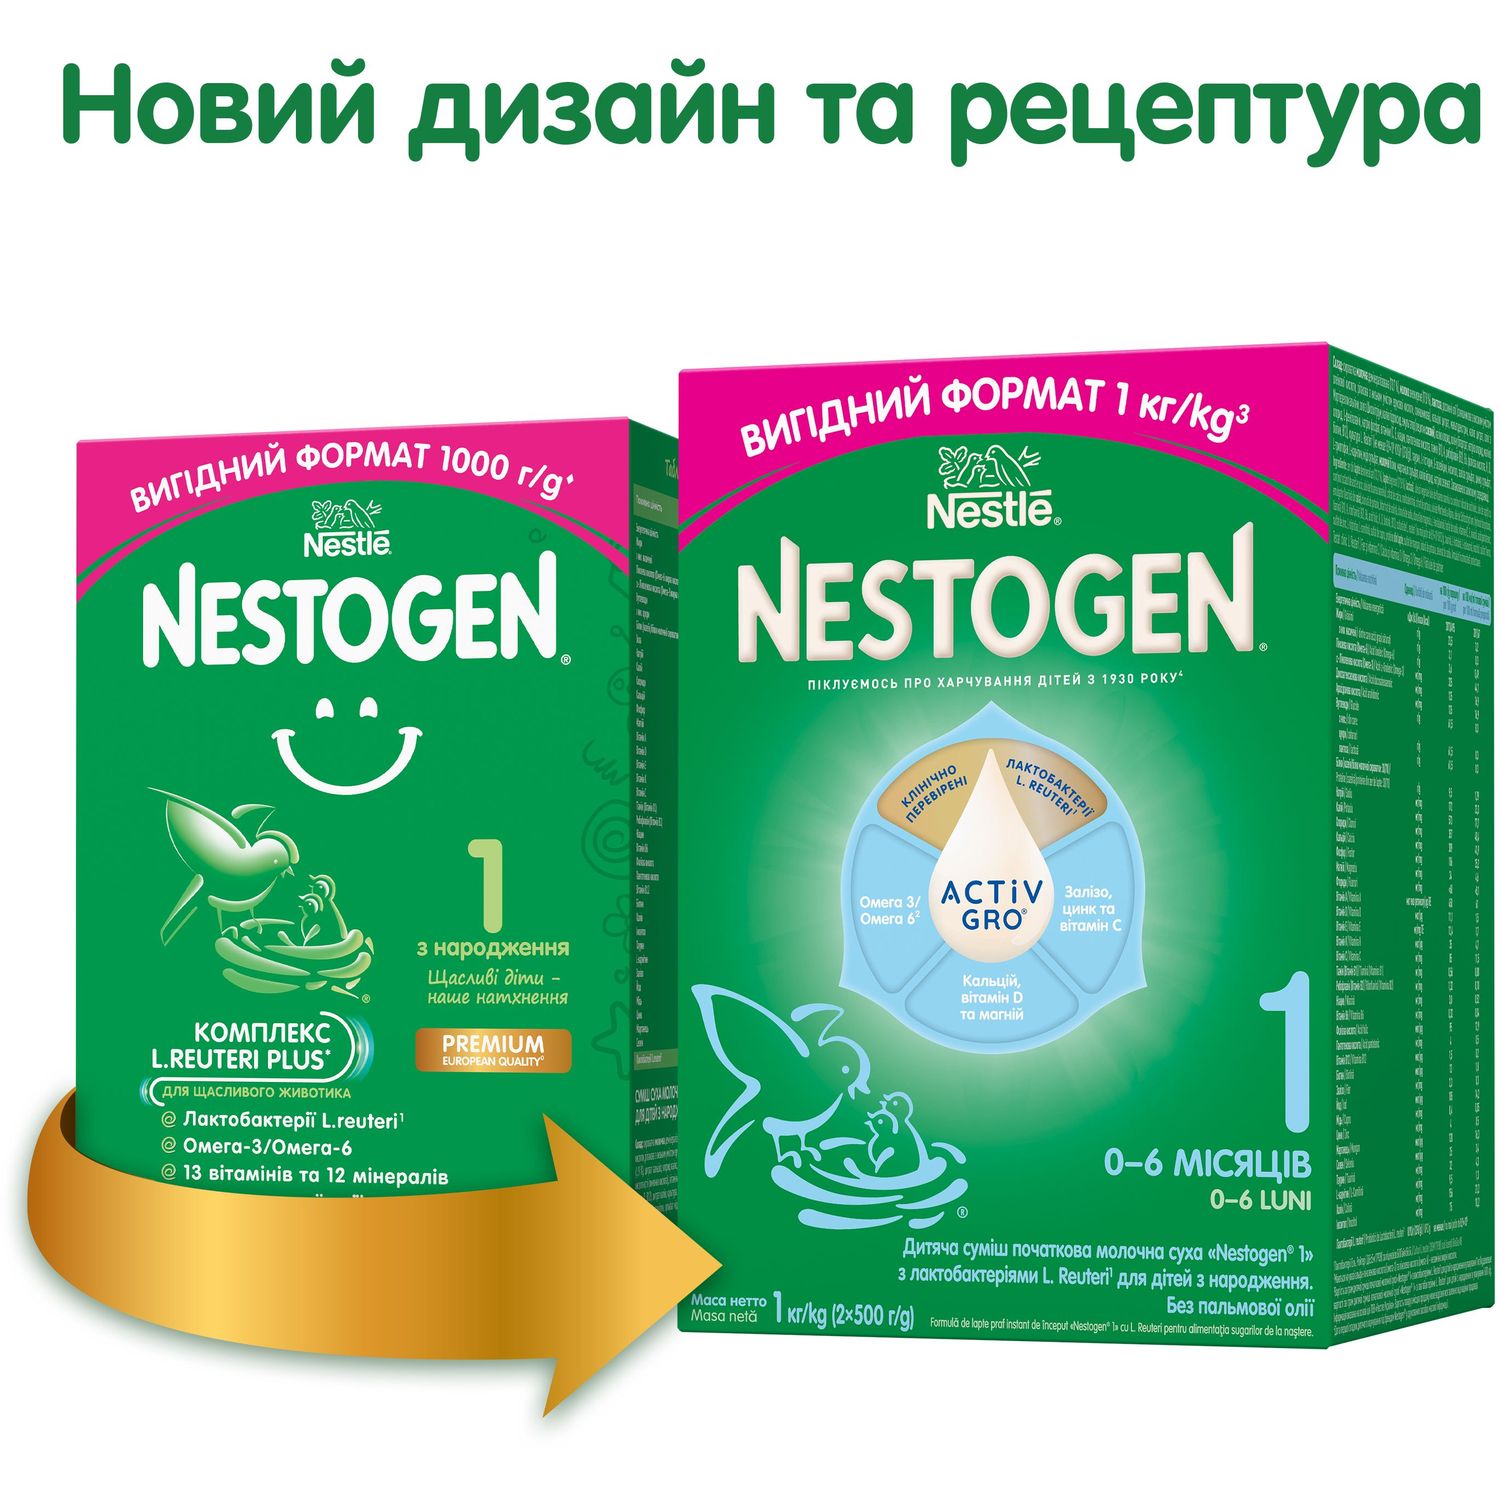 Cуміш молочна суха Nestogen 1 з лактобактеріями L. Reuteri для дітей з народження 1000 г - фото 2